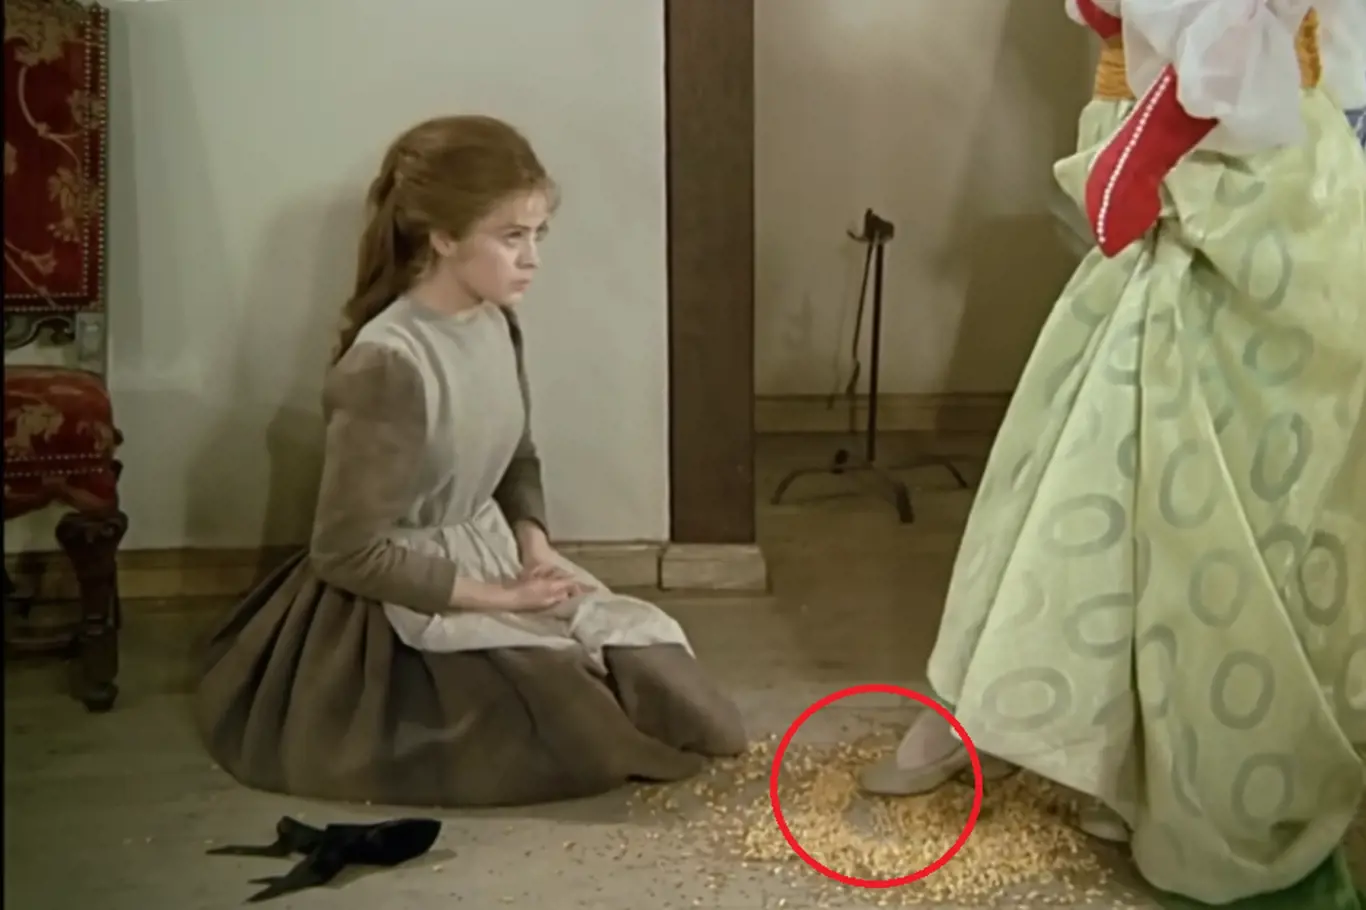 Mezi detail, který vyrušil diváky, patří také scéna, v níž Dora udělá do hromádky čočky a kukuřice střevícem kolečko. Když se ale Popelka po plese vrátí, po vzoru není ani památka